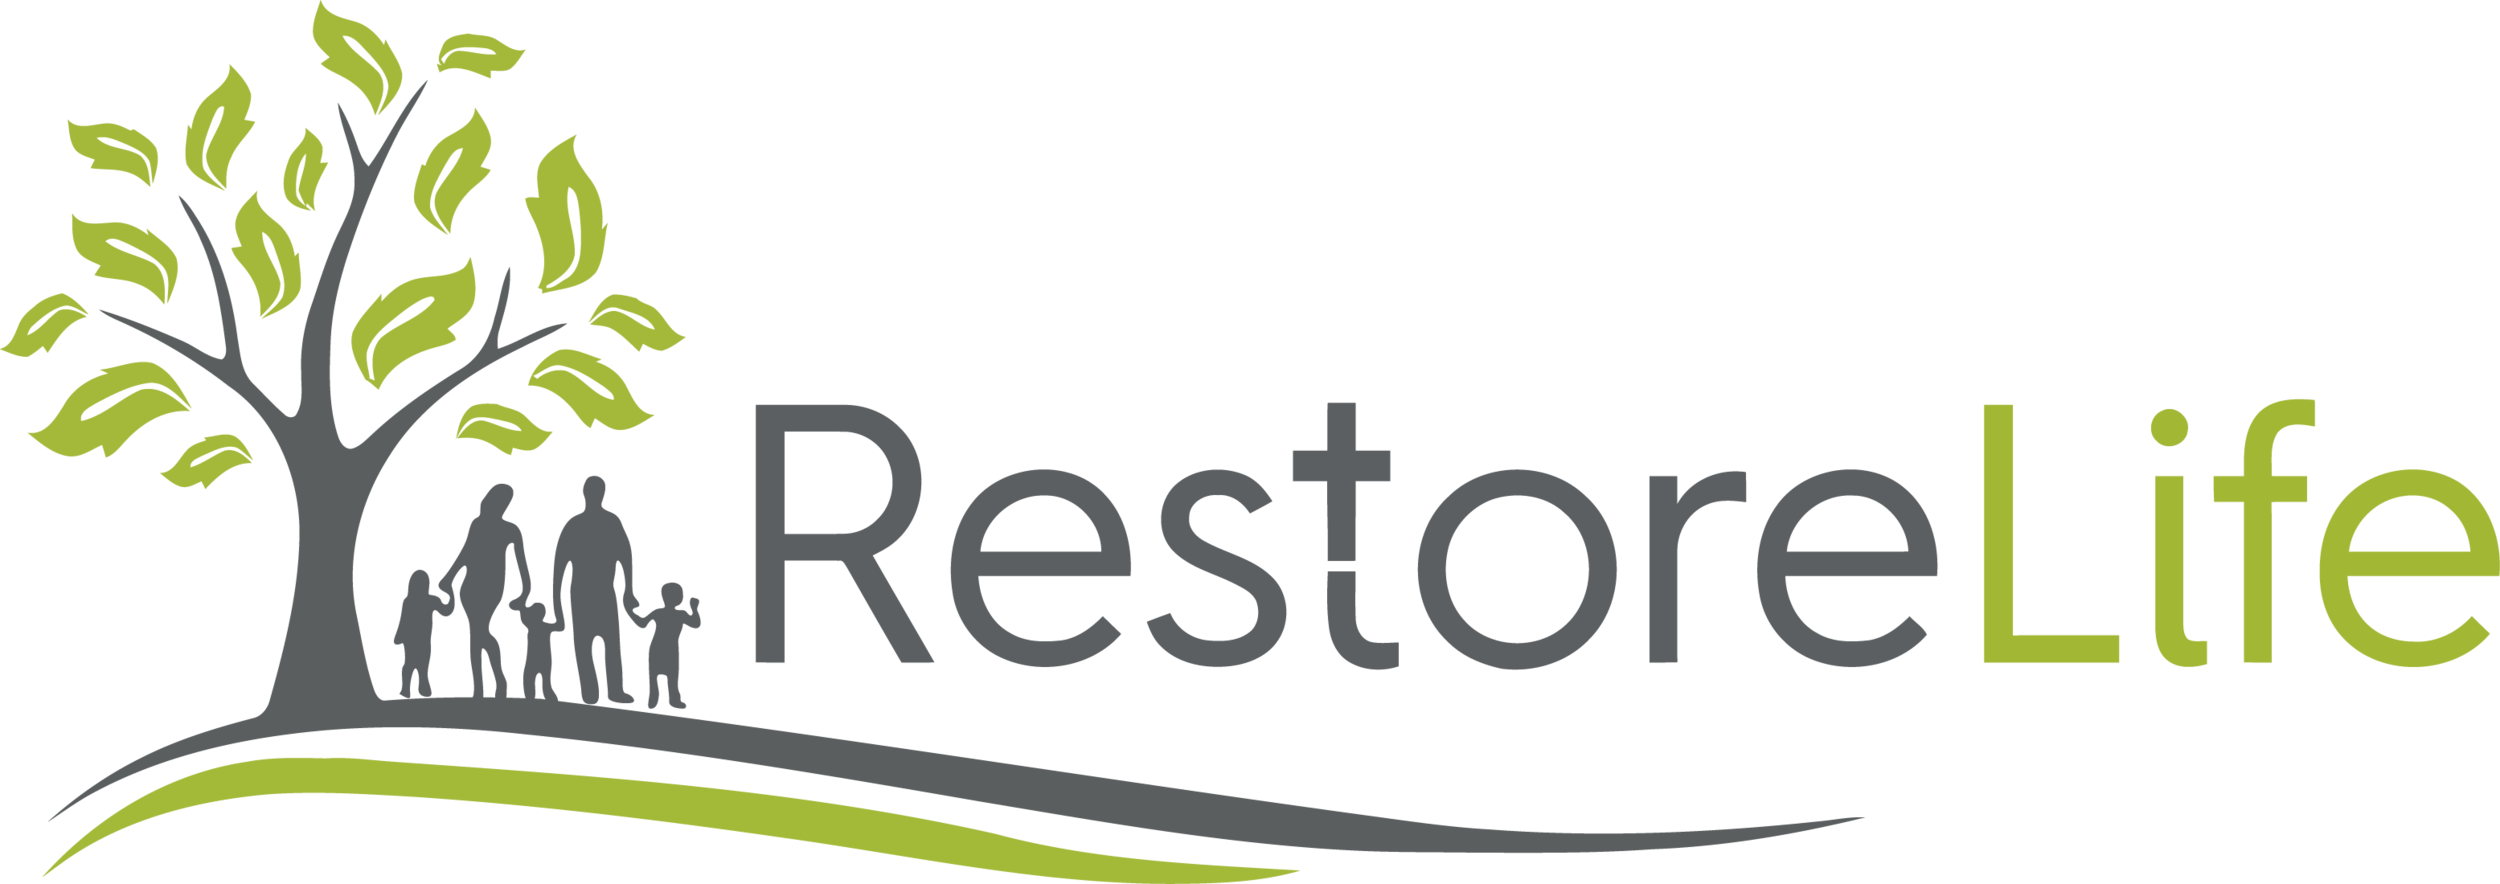 Restore Life Logo.png